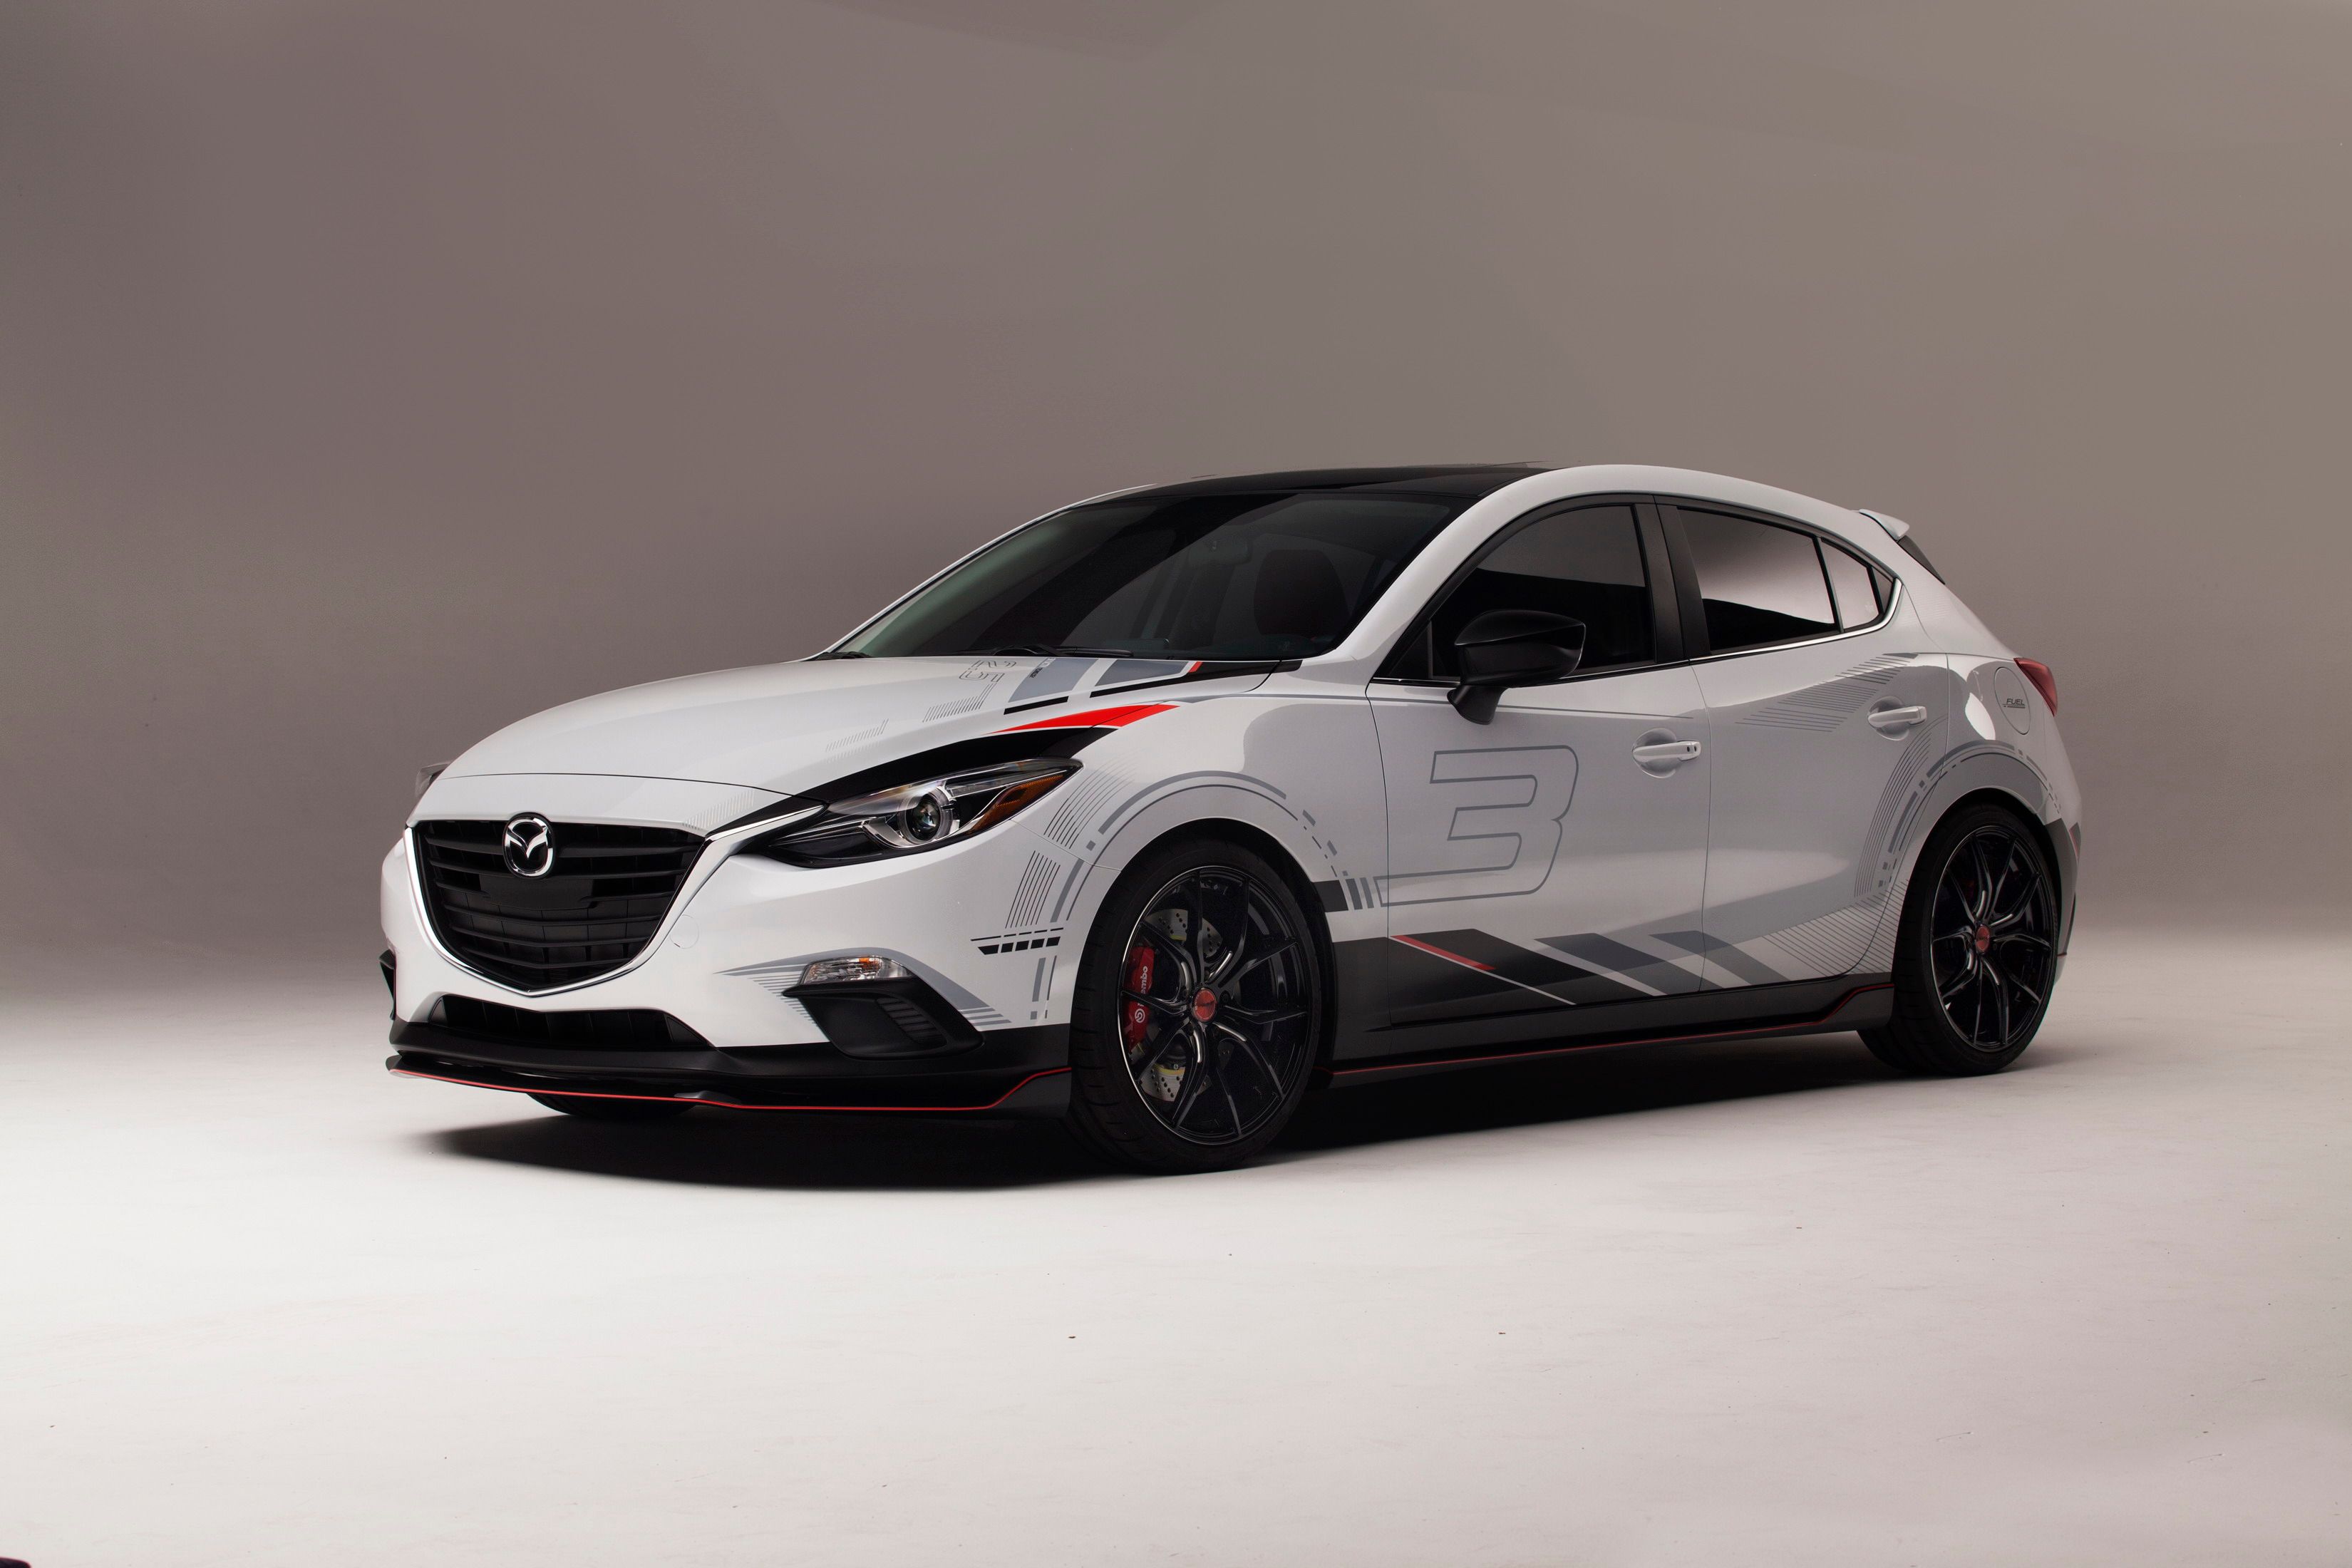 2014 Mazda Club Sport 3 Concept